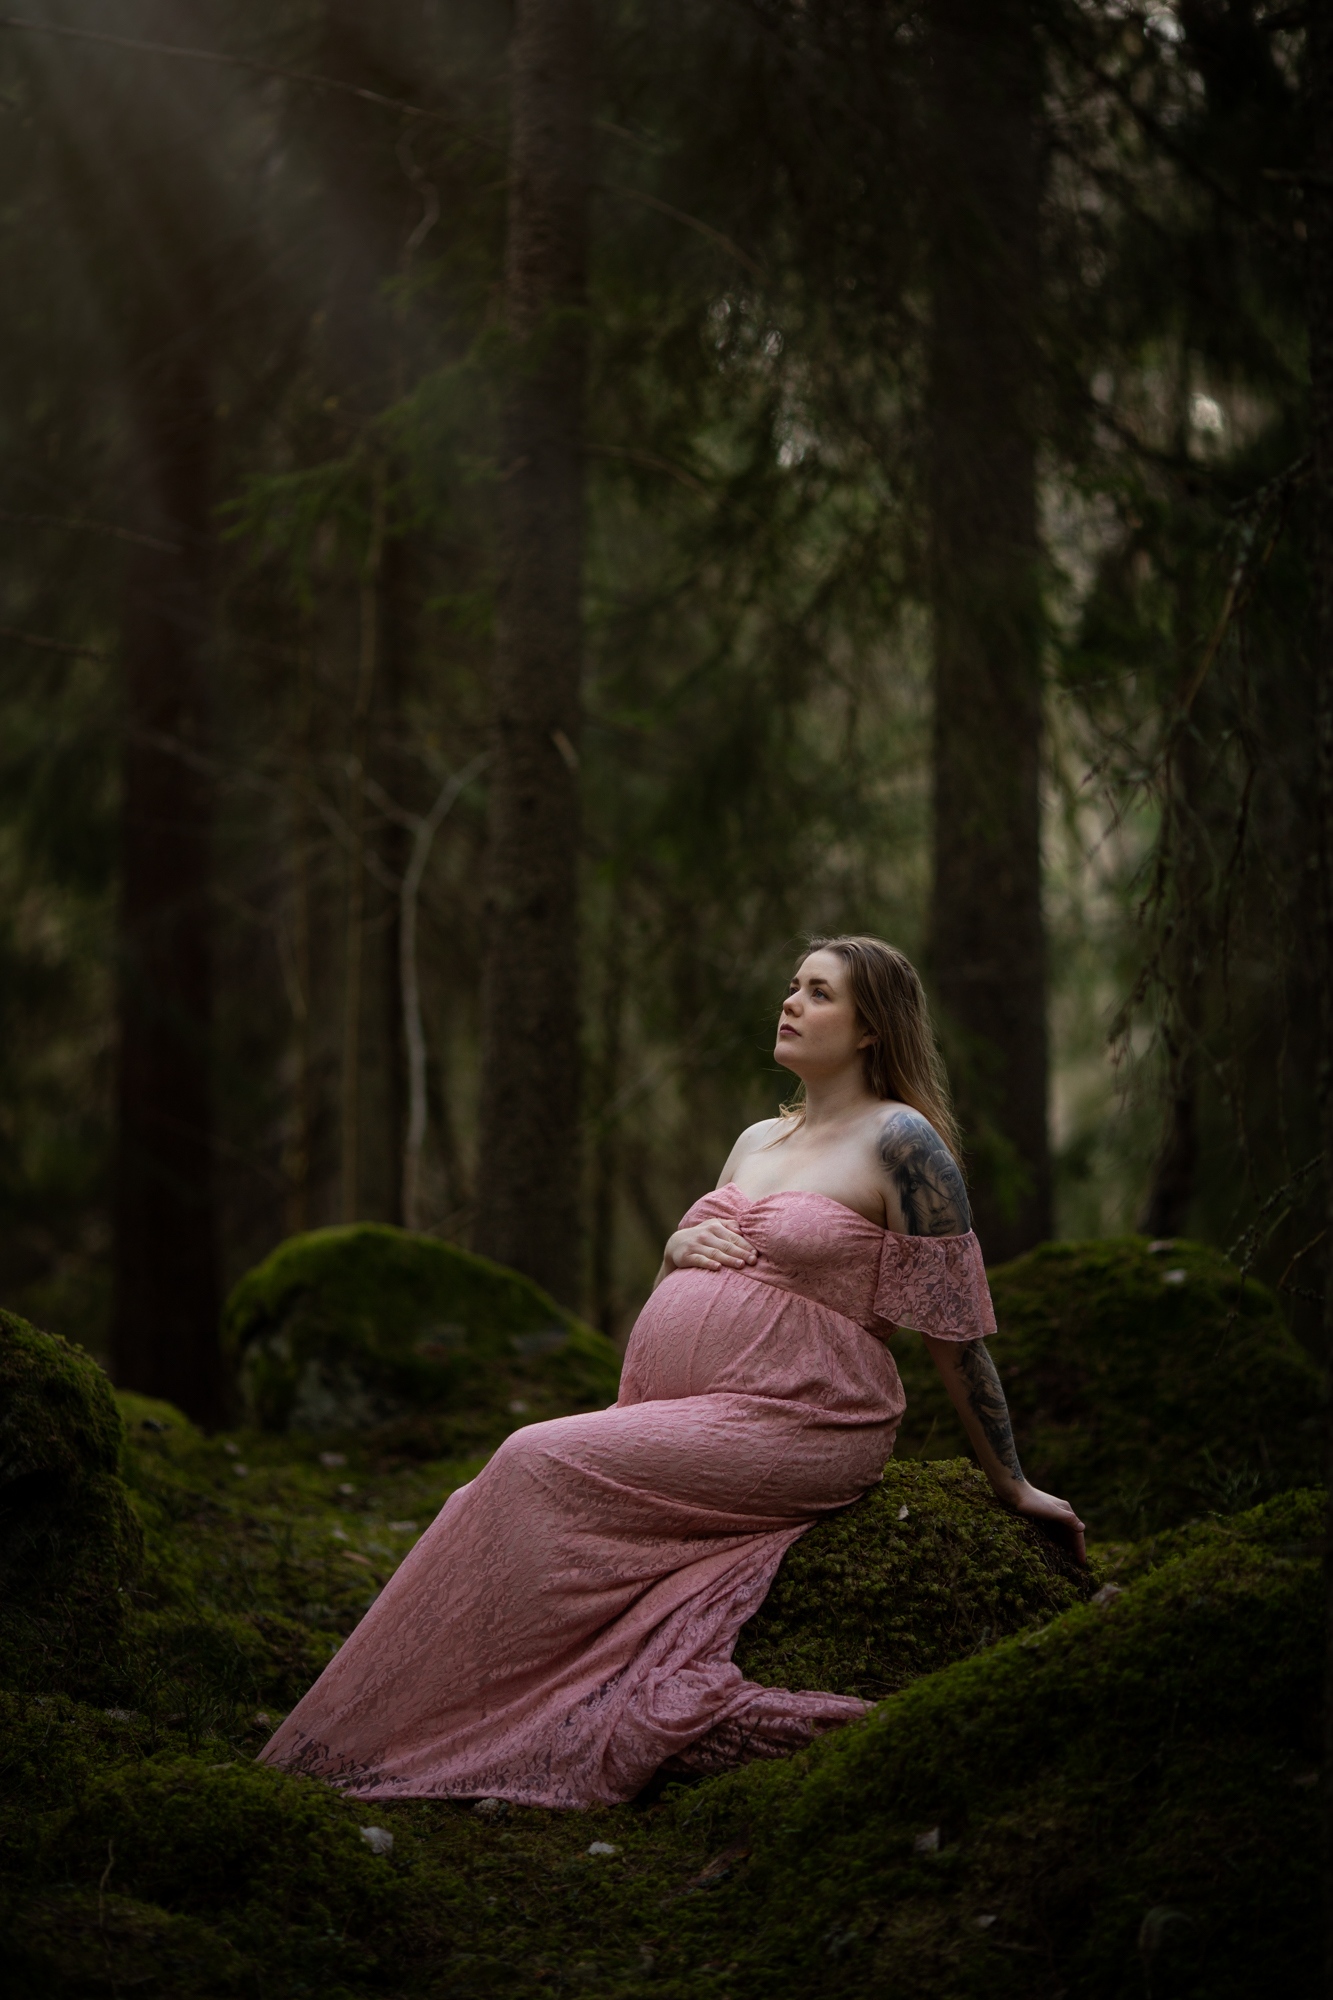 Studio-Li fotograferar en gravid kvinno på en bro som blickar ut